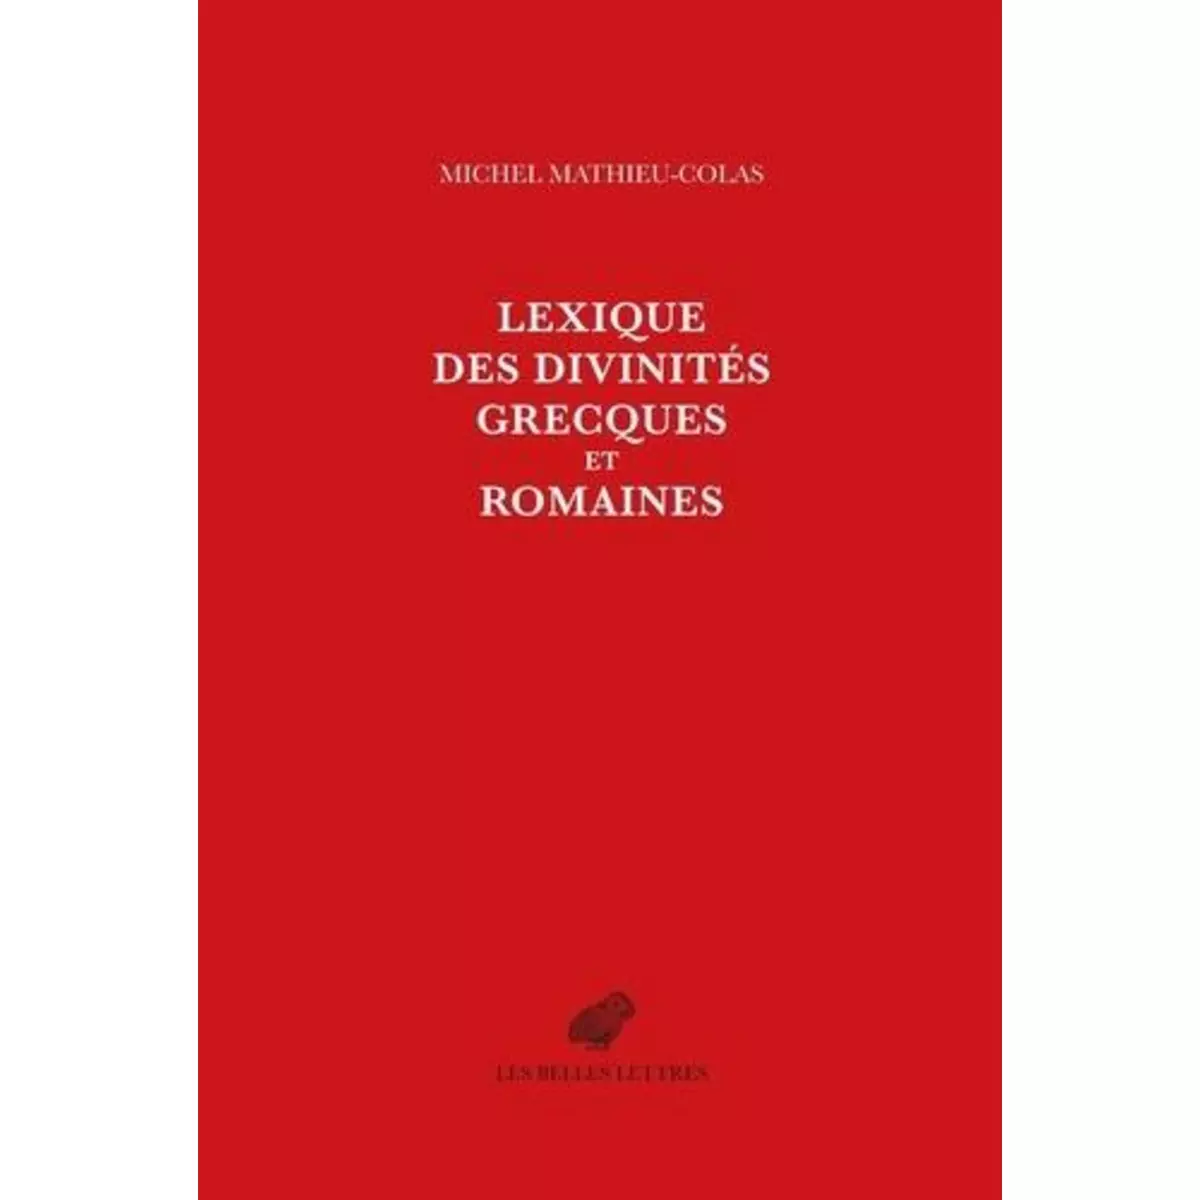  LEXIQUE DES DIVINITES GRECQUES ET ROMAINES, Mathieu-Colas Michel